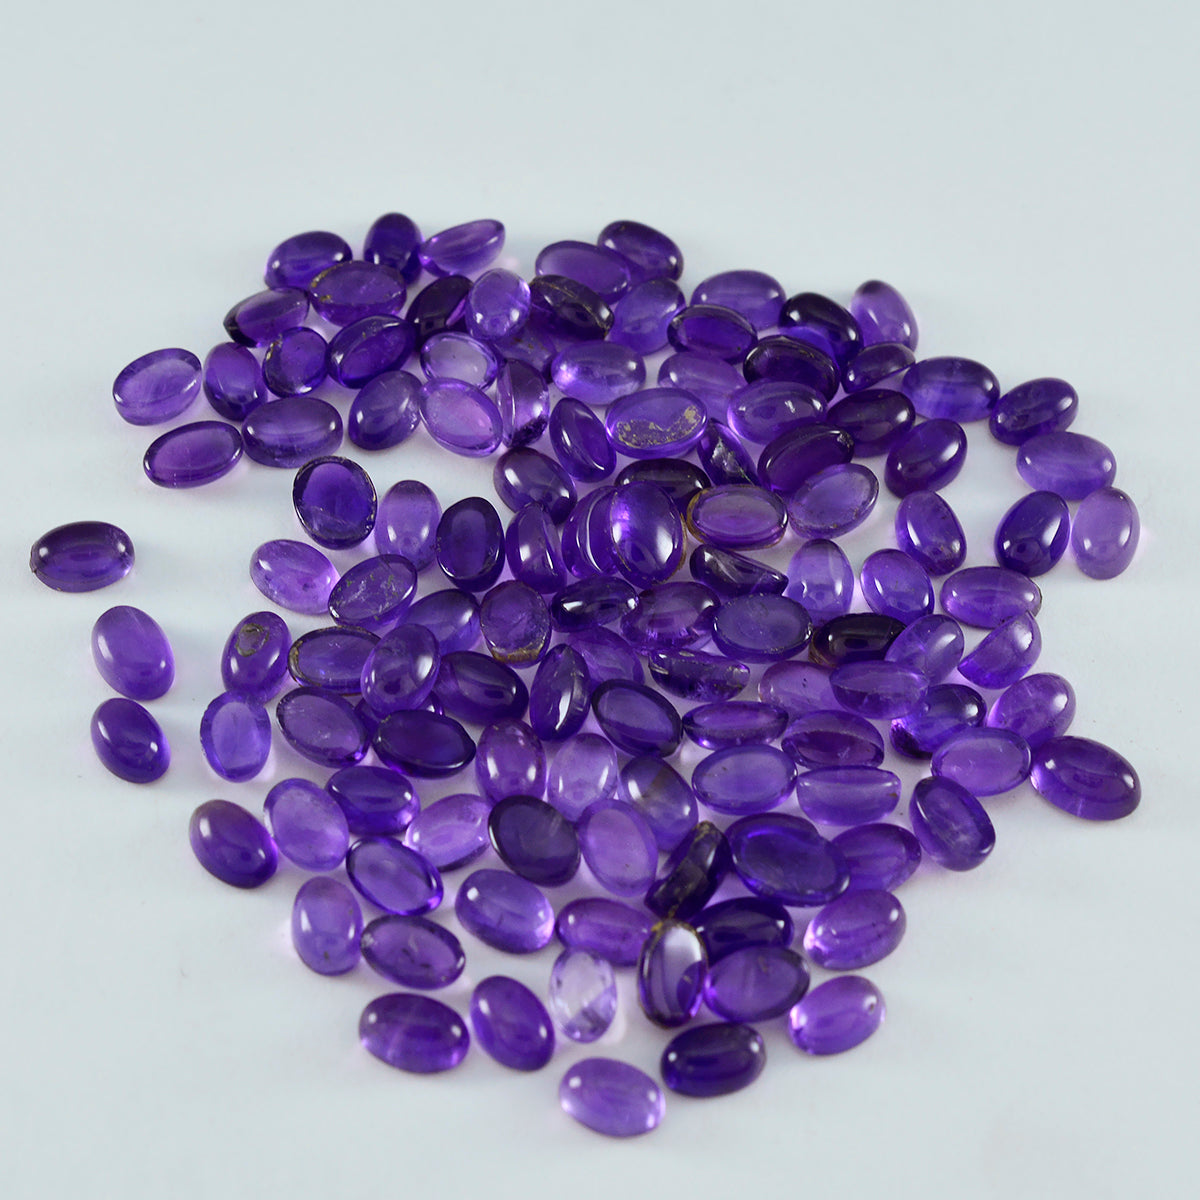 riyogems 1шт фиолетовый аметист кабошон 4х6 мм овальной формы камень хорошего качества